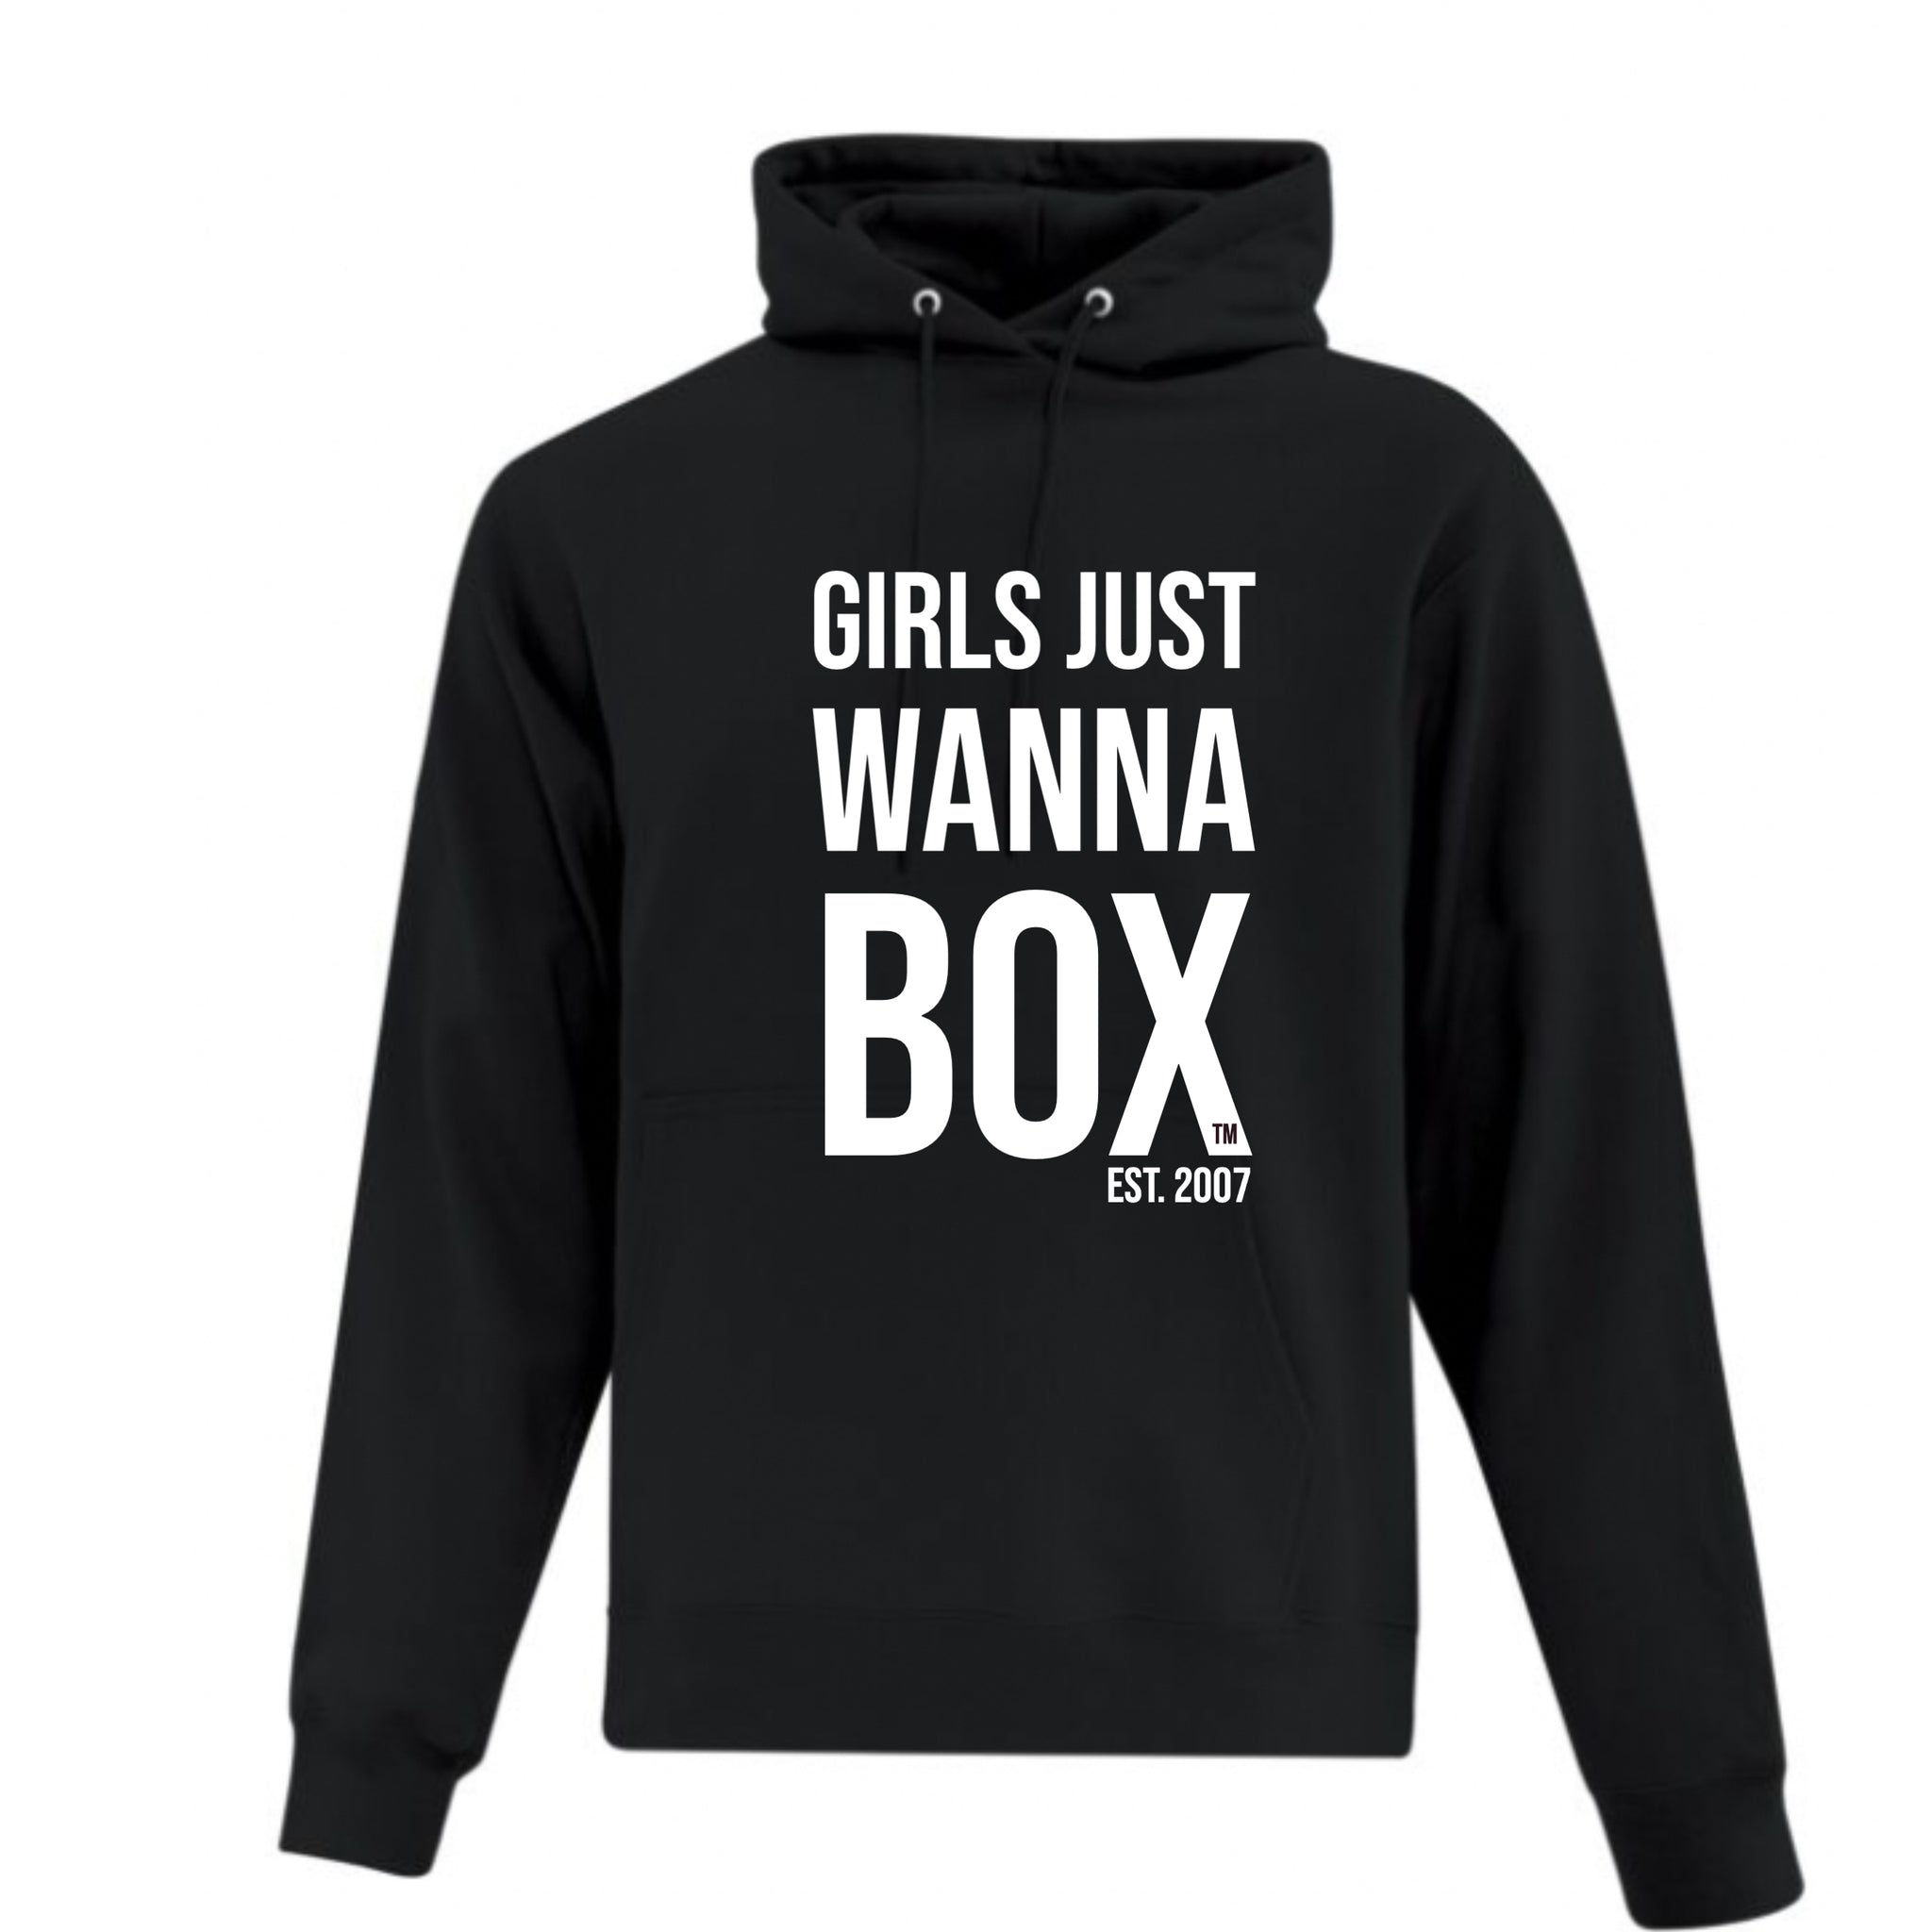 Girls just wanna box black hoodie sweatshirt 